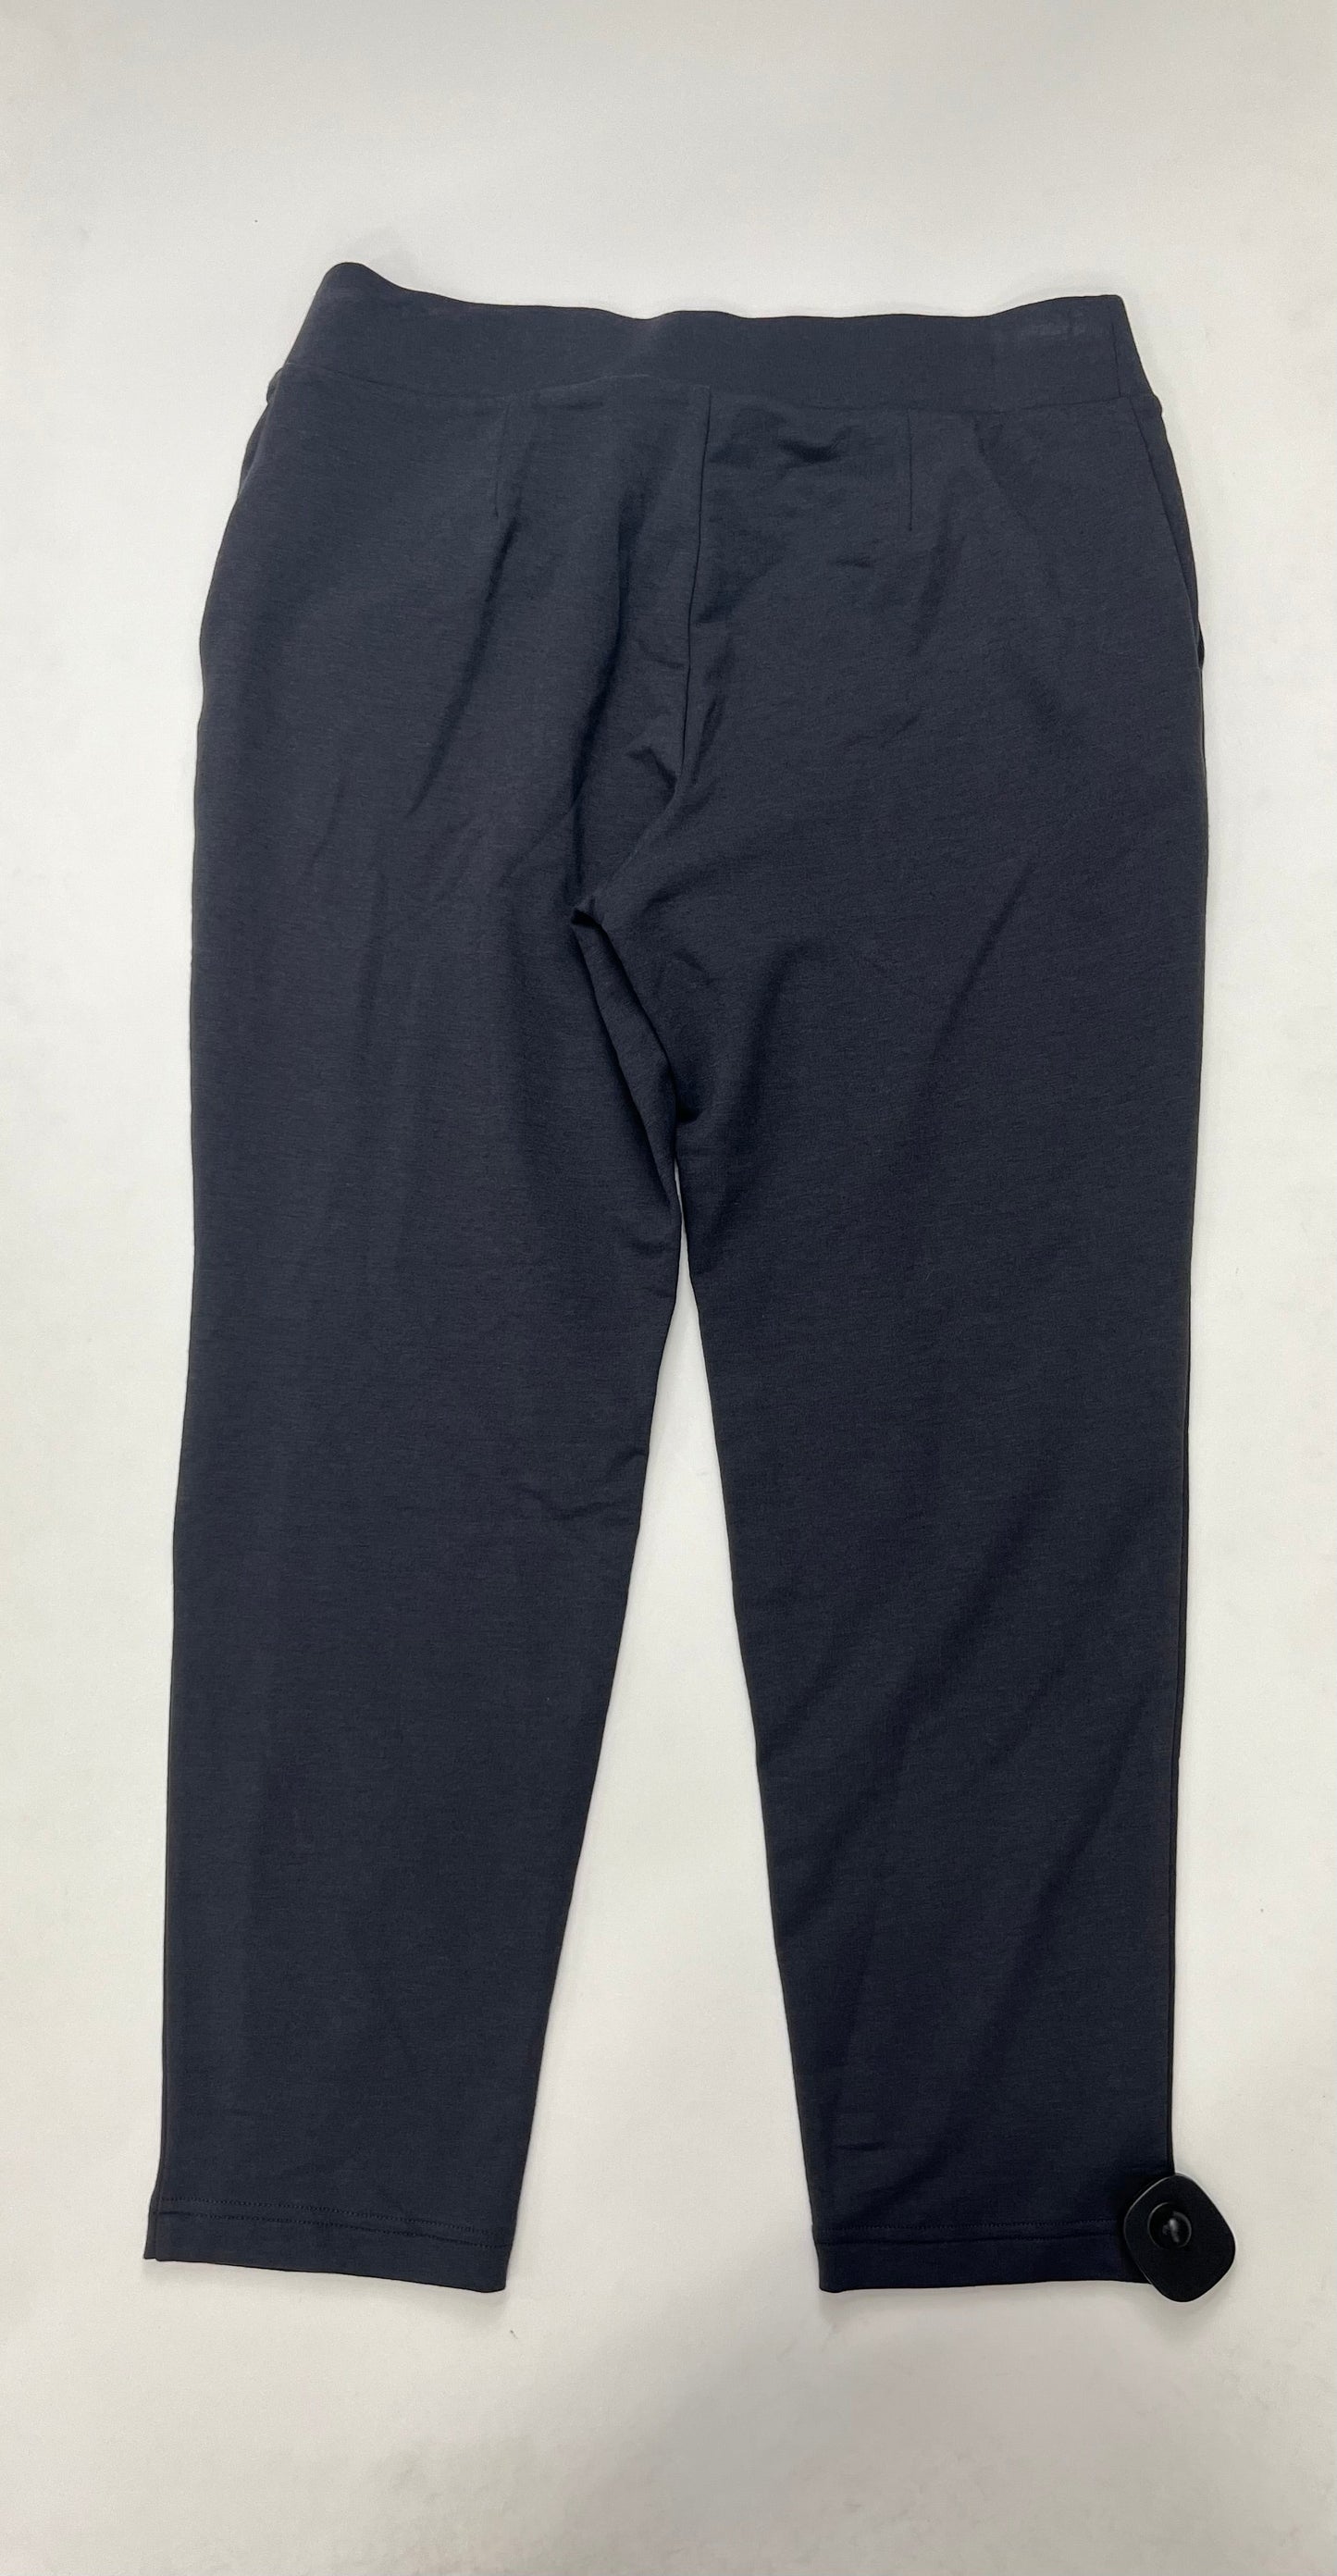 Grey Pants Cropped J Jill NWT, Size Xs